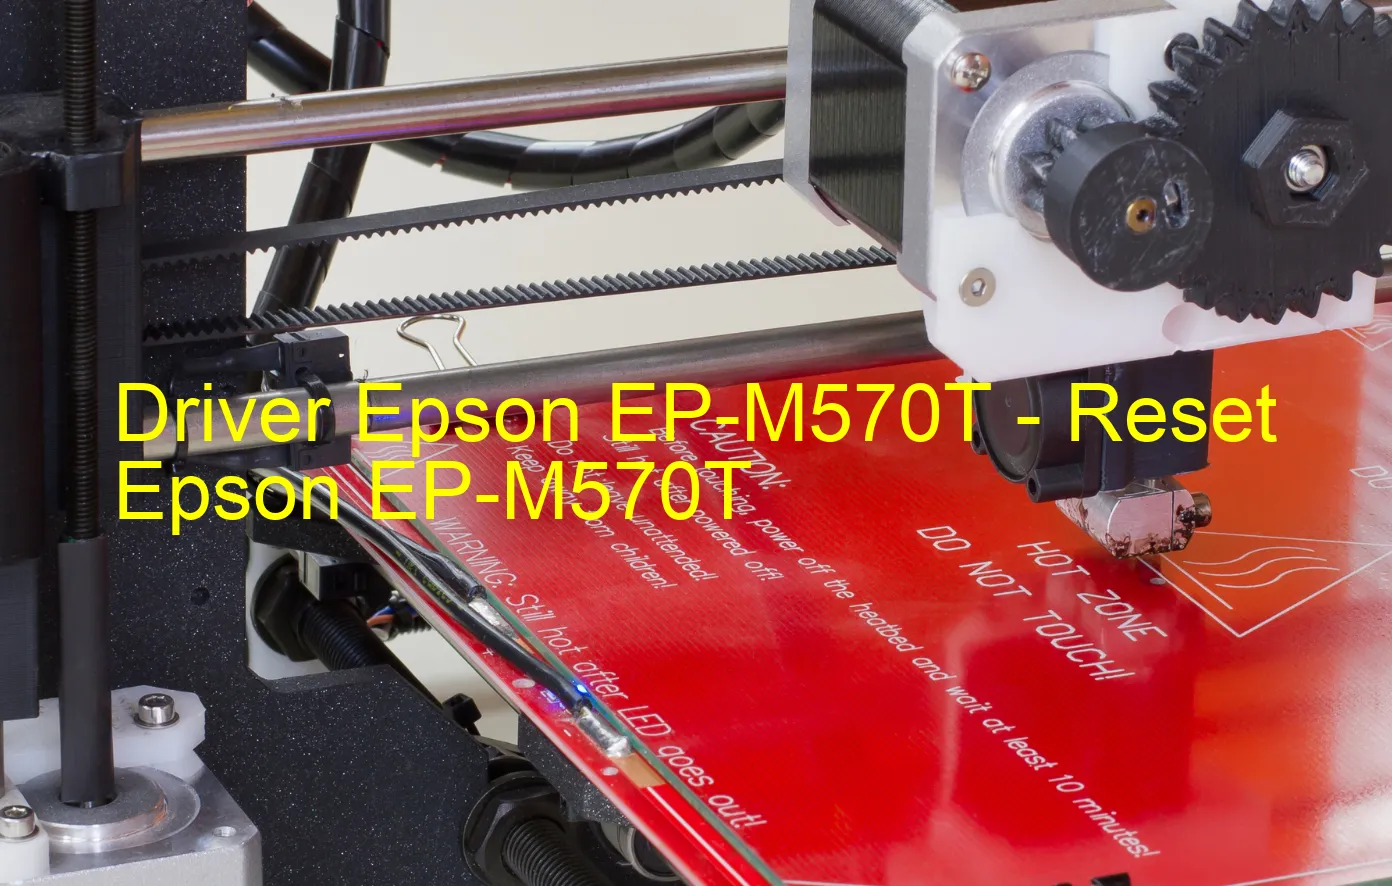 Epson EP-M570Tのドライバー、Epson EP-M570Tのリセットソフトウェア